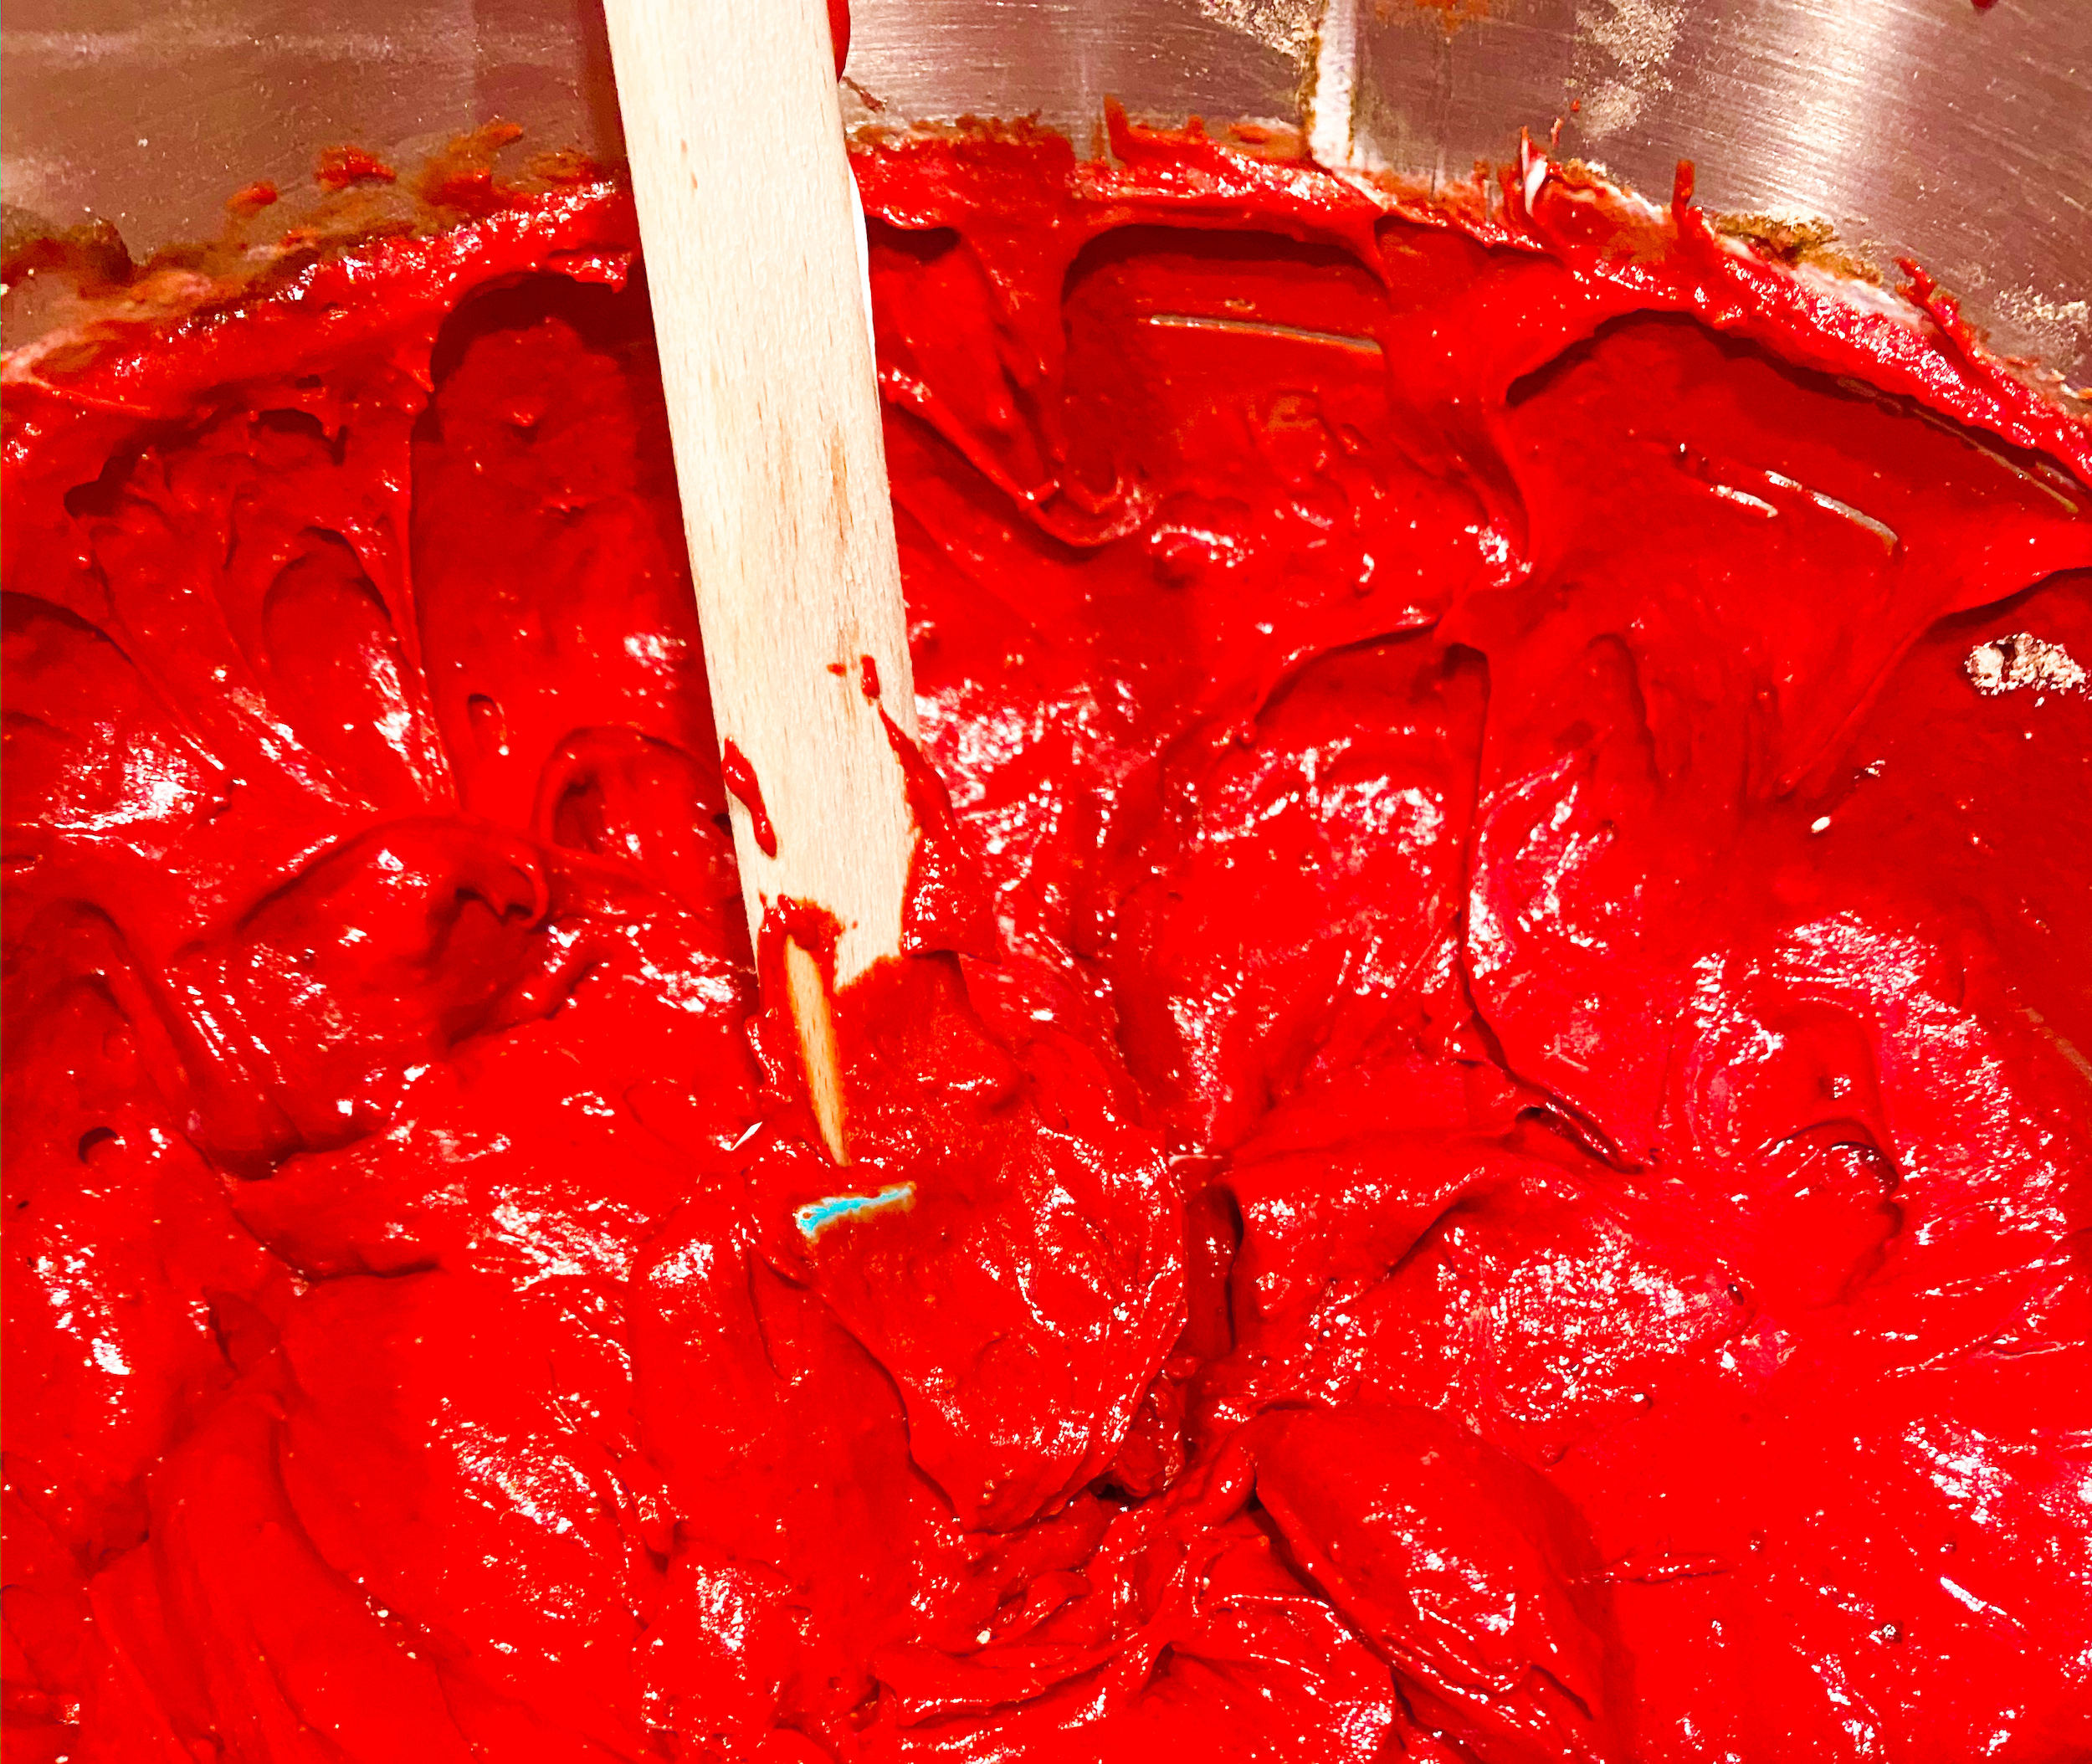 Red velvet bundt cake mix in a metal bowl. 